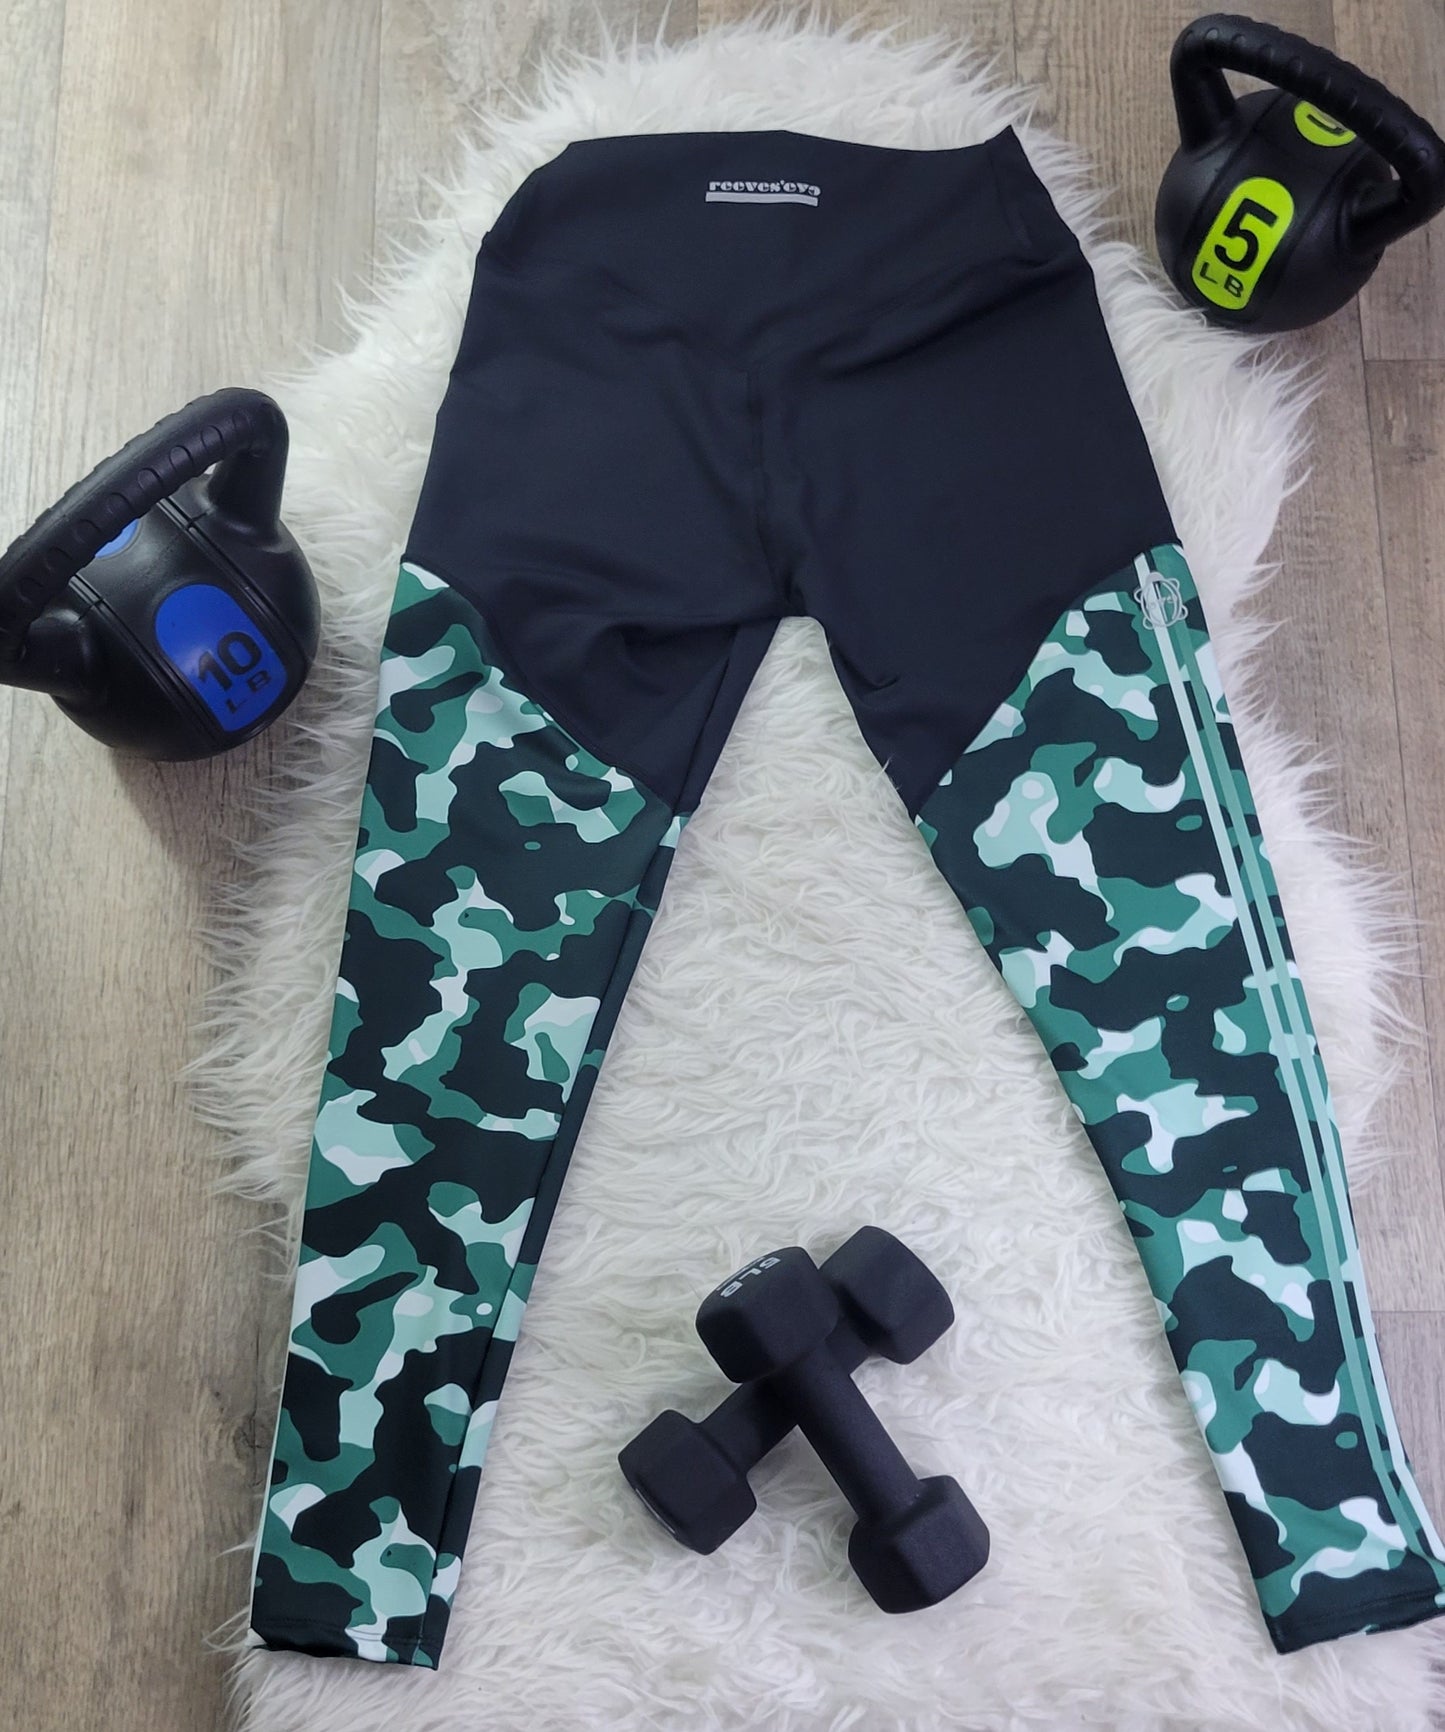 Green Camo Sports Leggings - Yoga Pants